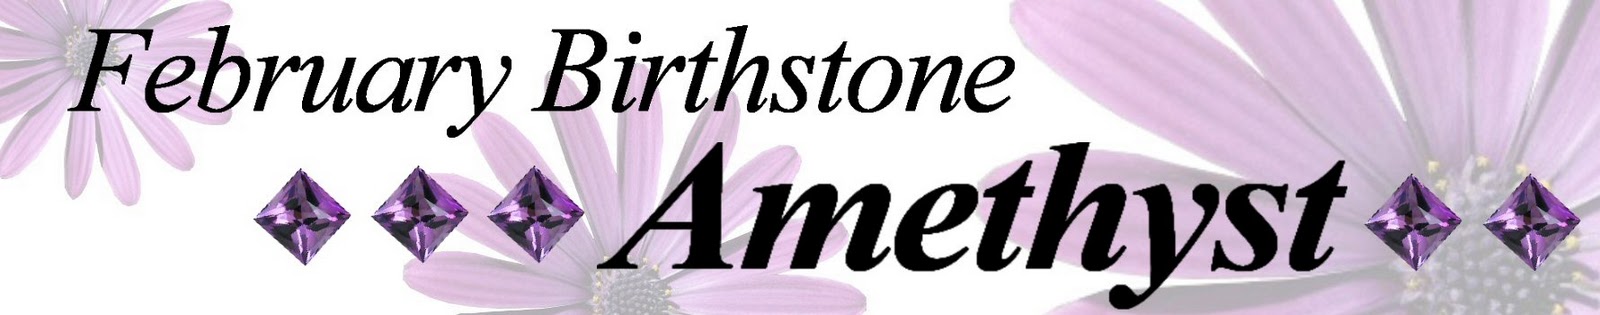 February Birthstone Amethyst